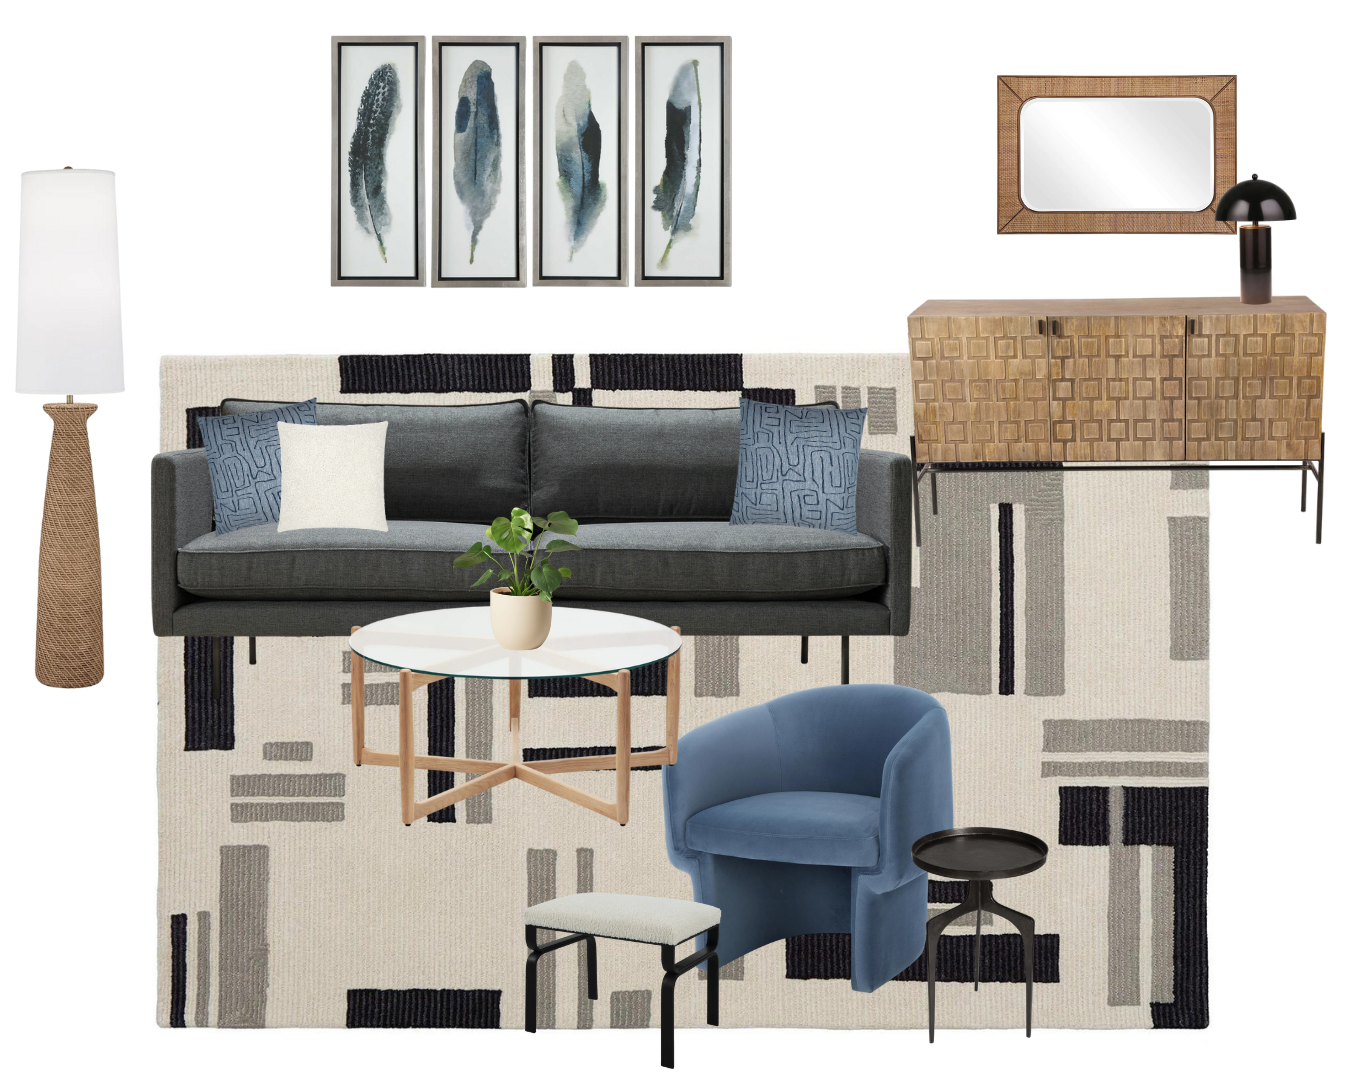 stylish furniture and decor portland oregon furniture store and interior design